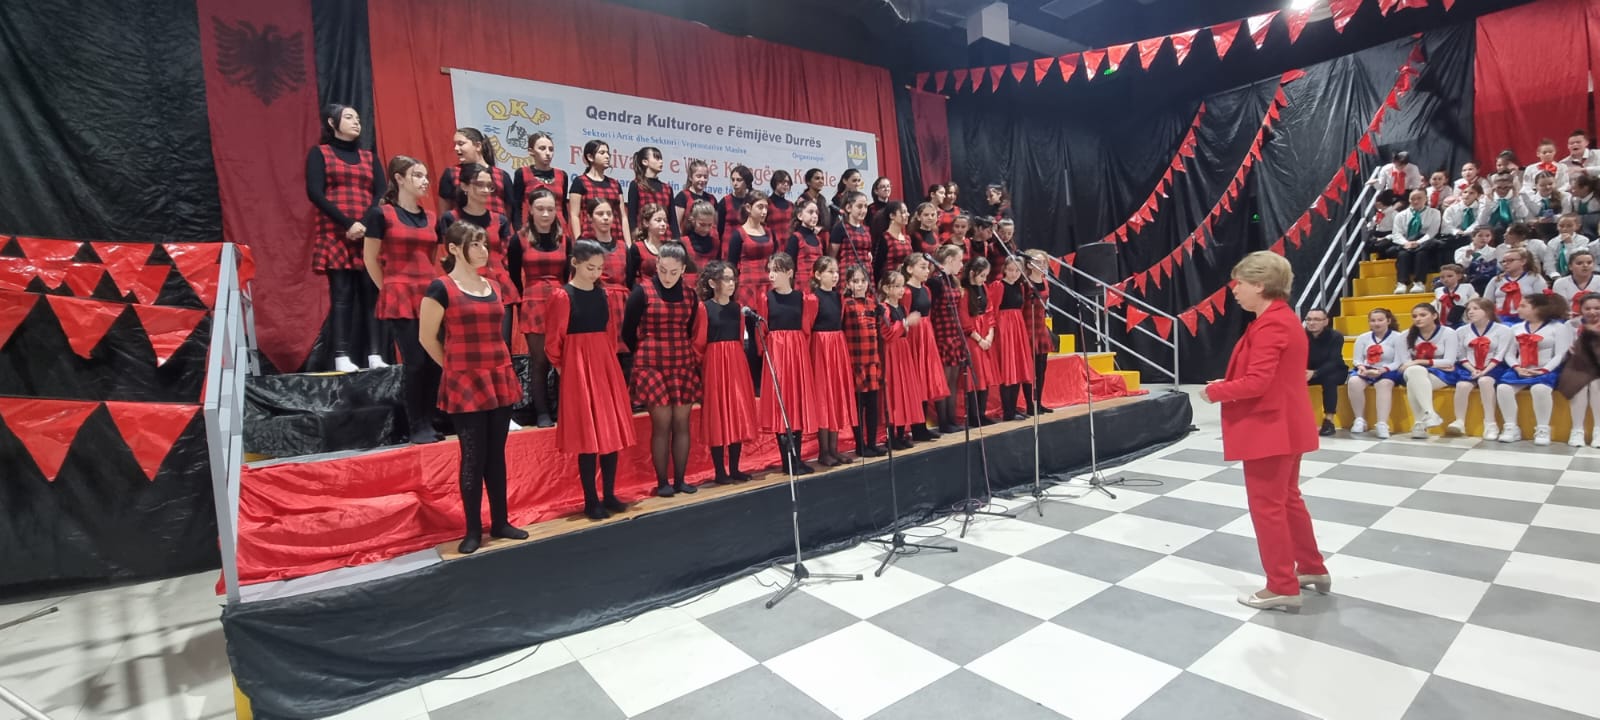 Edicioni i VIII i Festivalit të Këngëve Korale, QKF Durrës shpall shkollat fituese (FOTO+VIDEO)